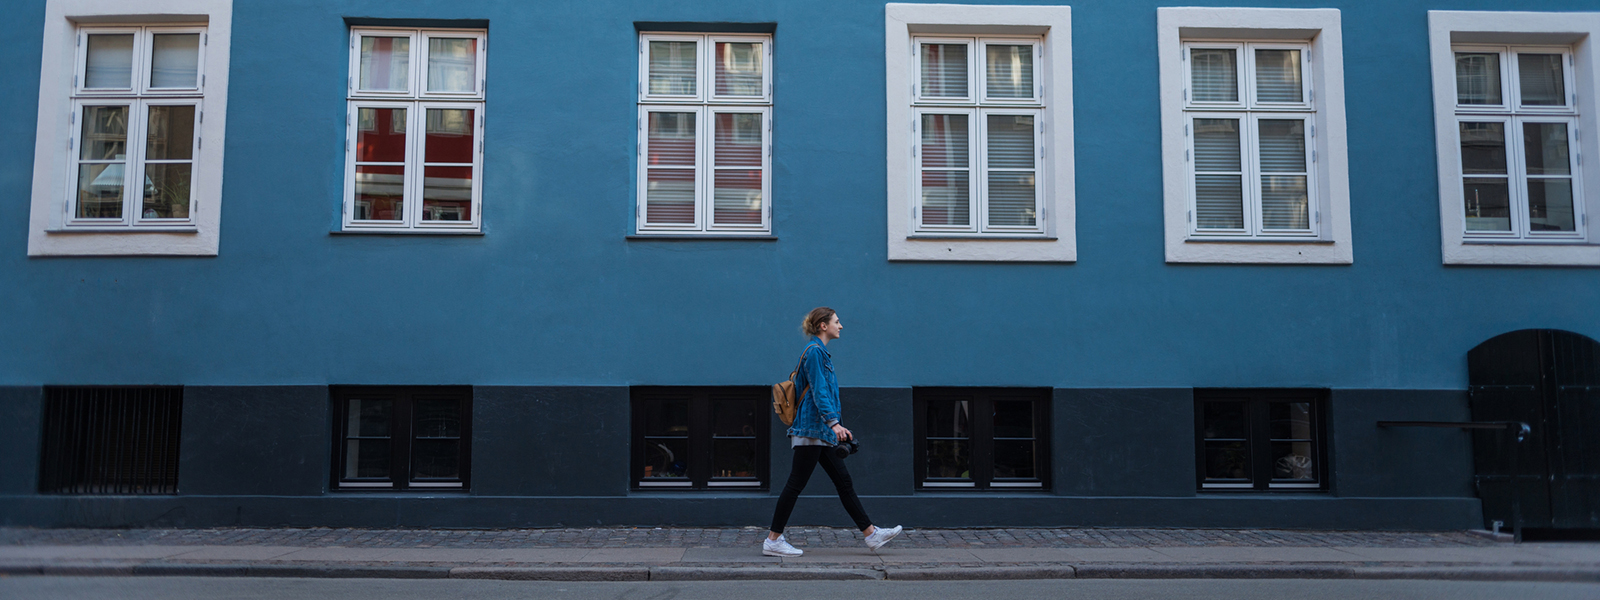 Журнал/Гид по Копенгагену: топ-10 любопытных мест, которых нет в путеводителях